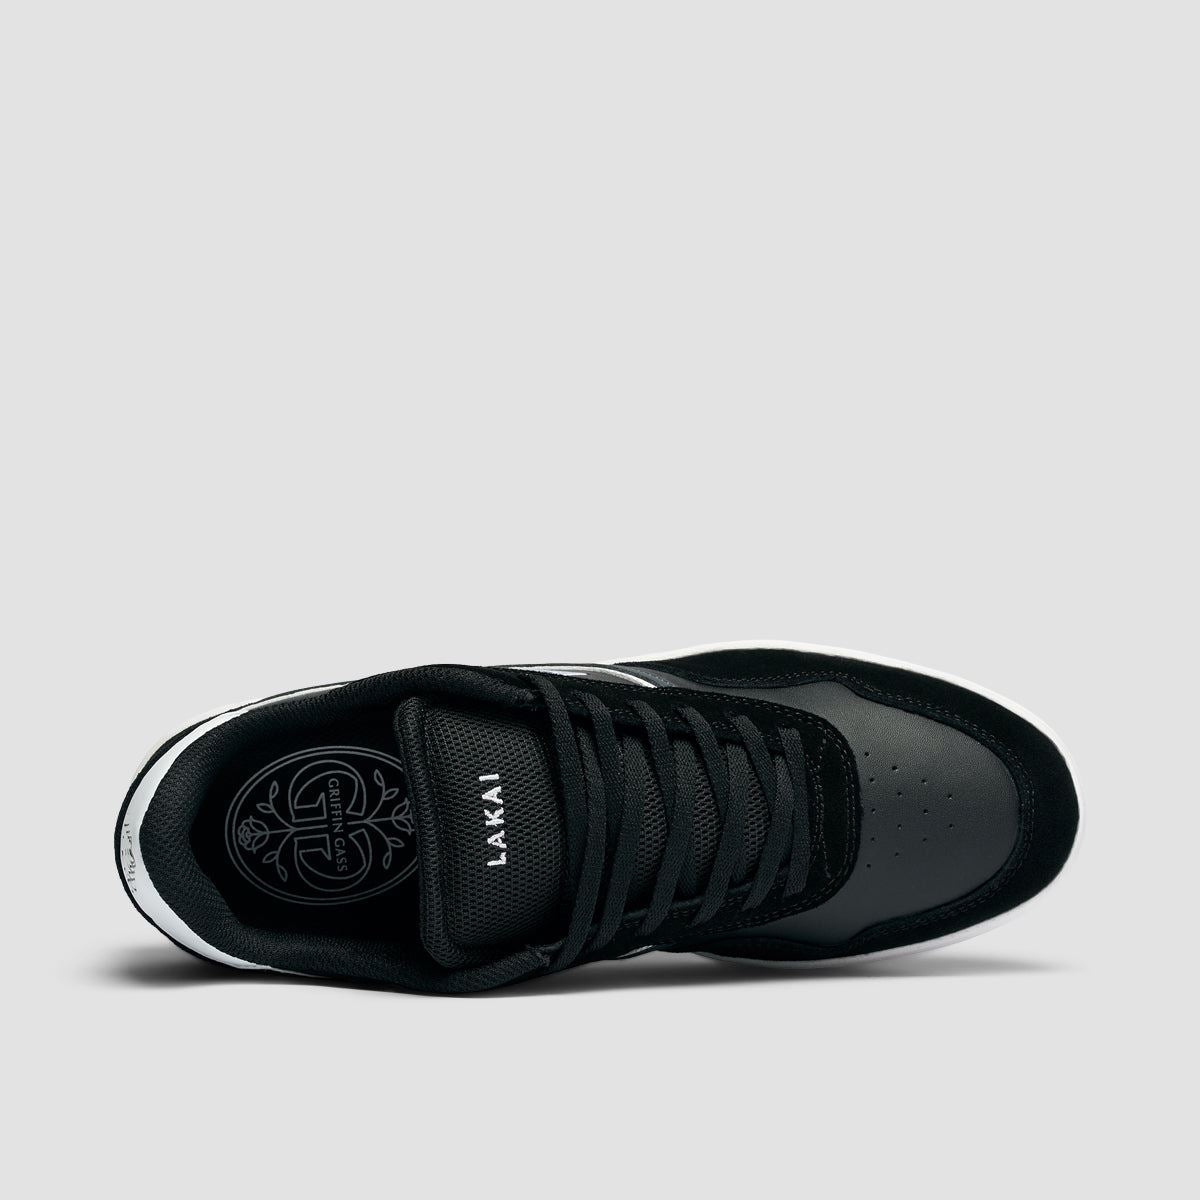 Lakai Terrace Shoes - Black Suede